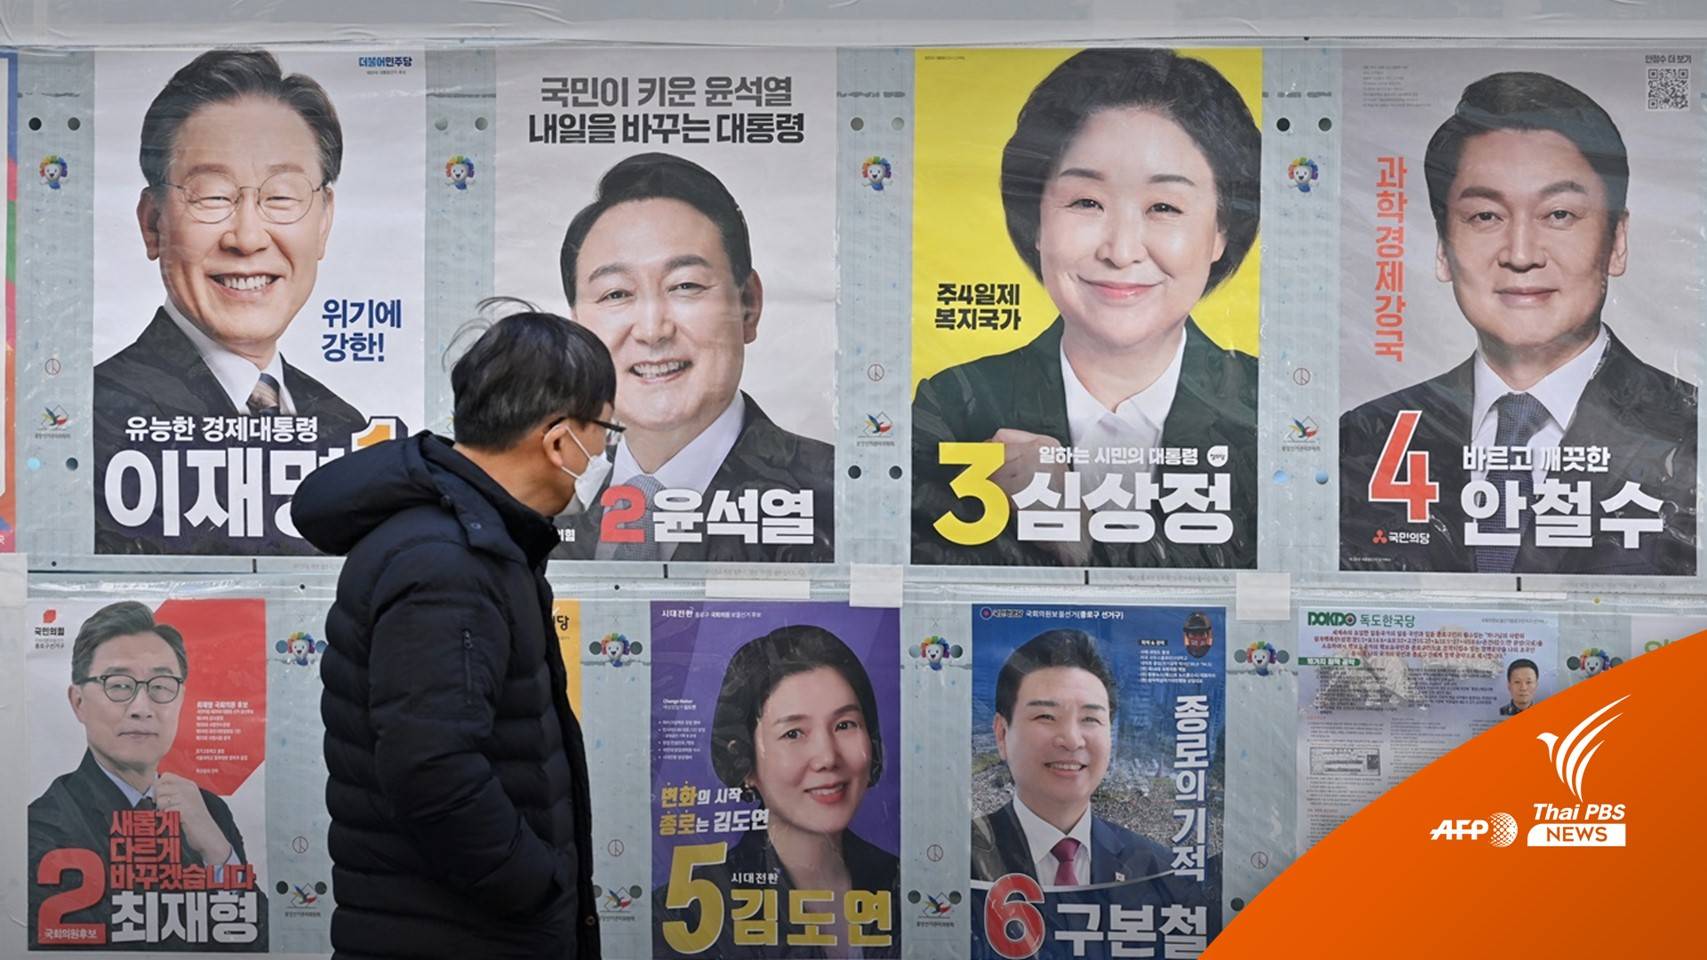 จับตา "เกาหลีใต้" เปิดคูหาเลือกประธานาธิบดี คนที่ 20